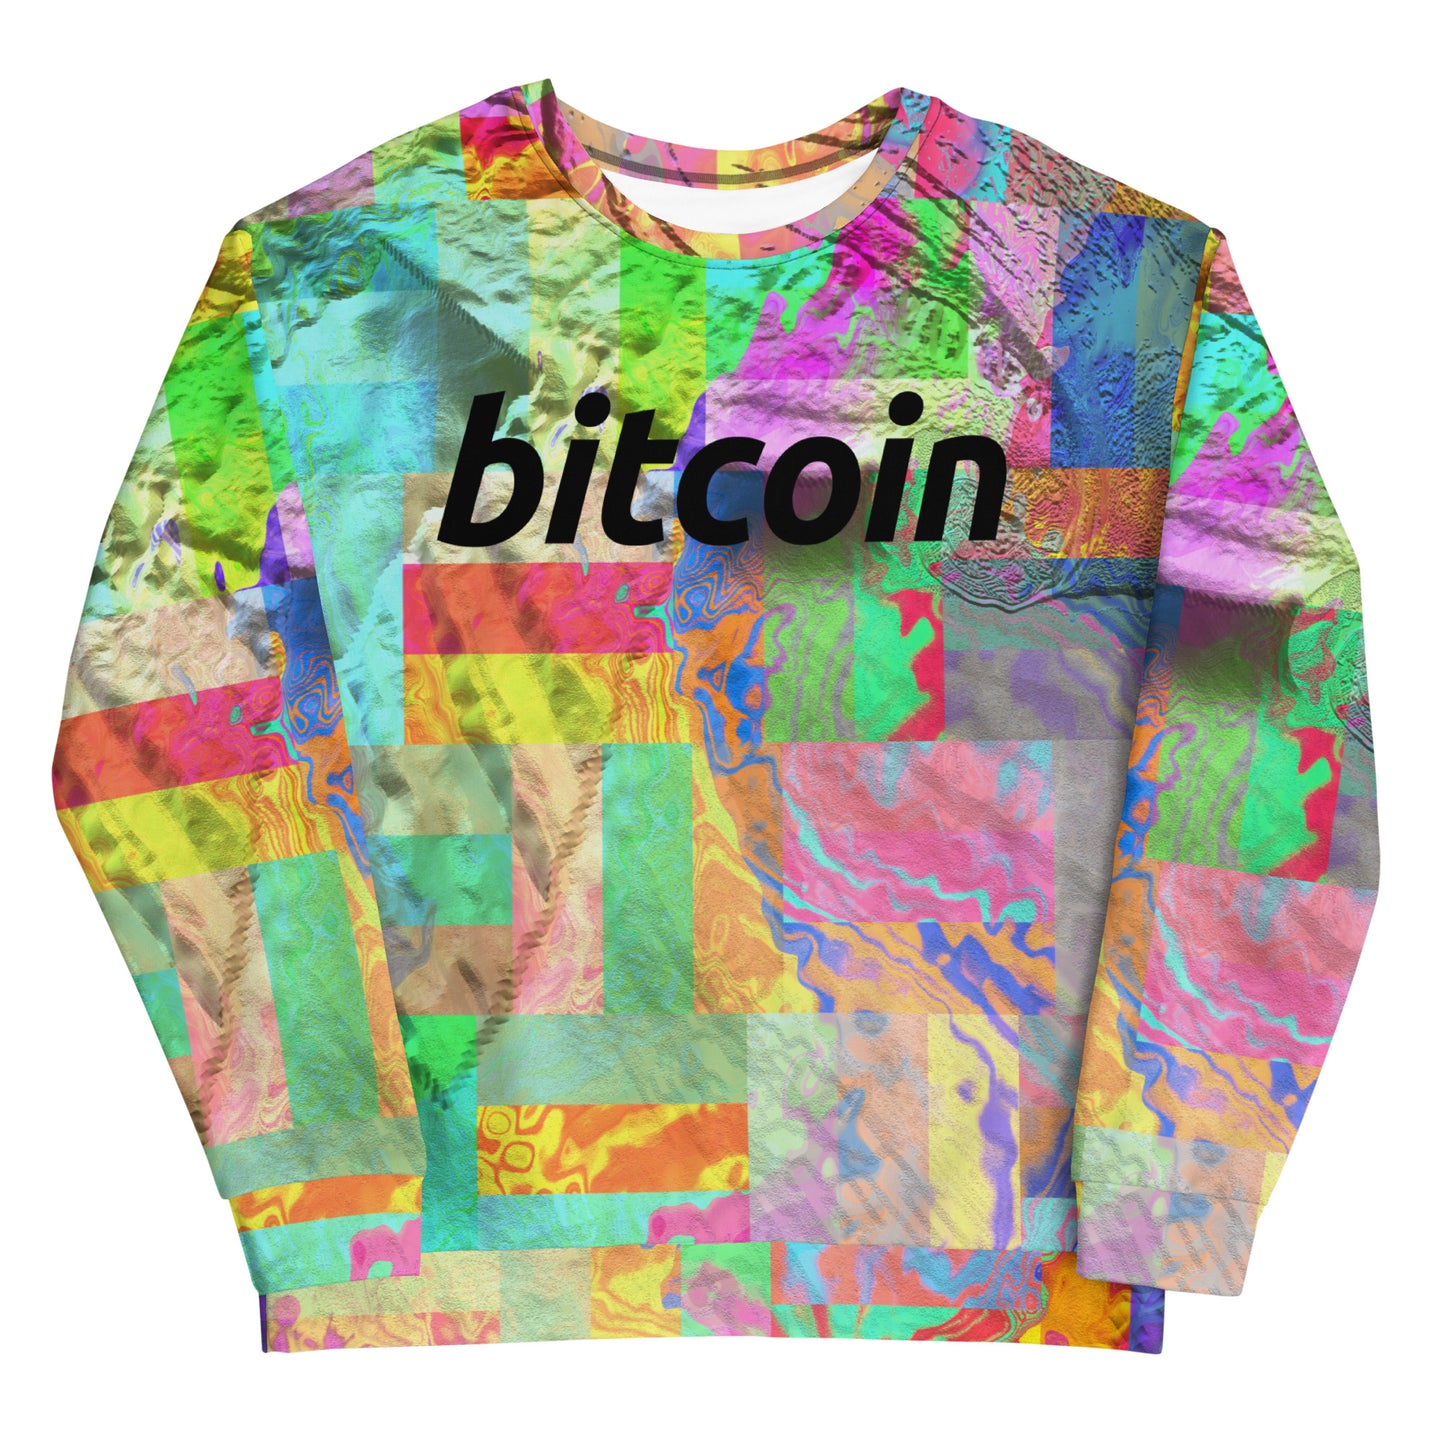 Bitcoin Acid Sweatshirt